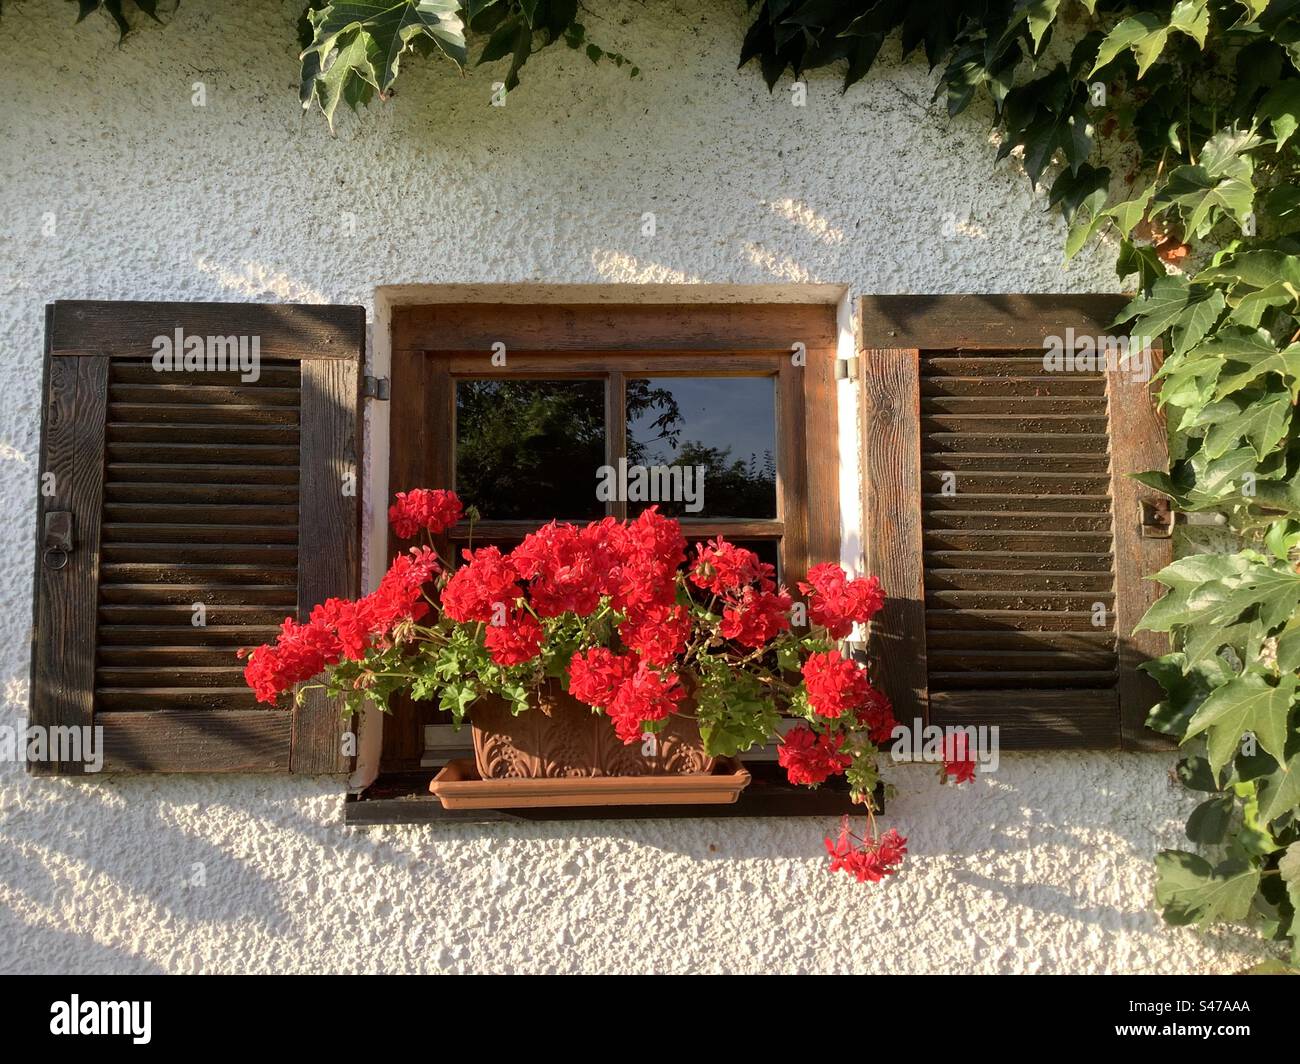 Fassade eines traditionell dekorierten Fensters eines bayerischen Bauernhofes mit Holzläden und rot blühenden Geranienblüten, Bayern, Deutschland, Europa Stockfoto